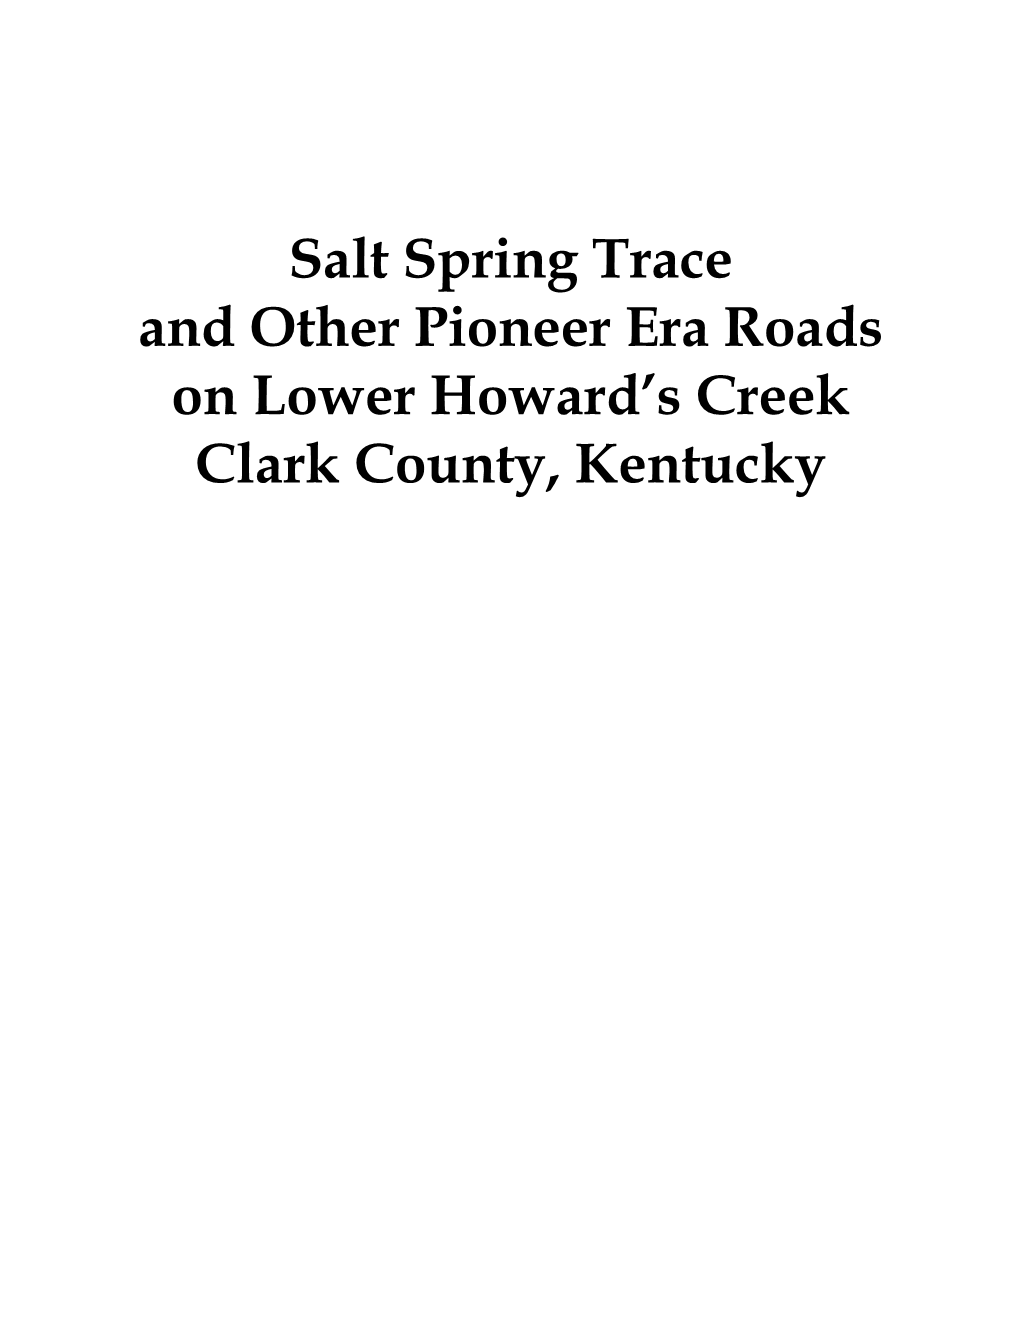 Pioneer Era Roads on Lower Howard’S Creek Clark County, Kentucky